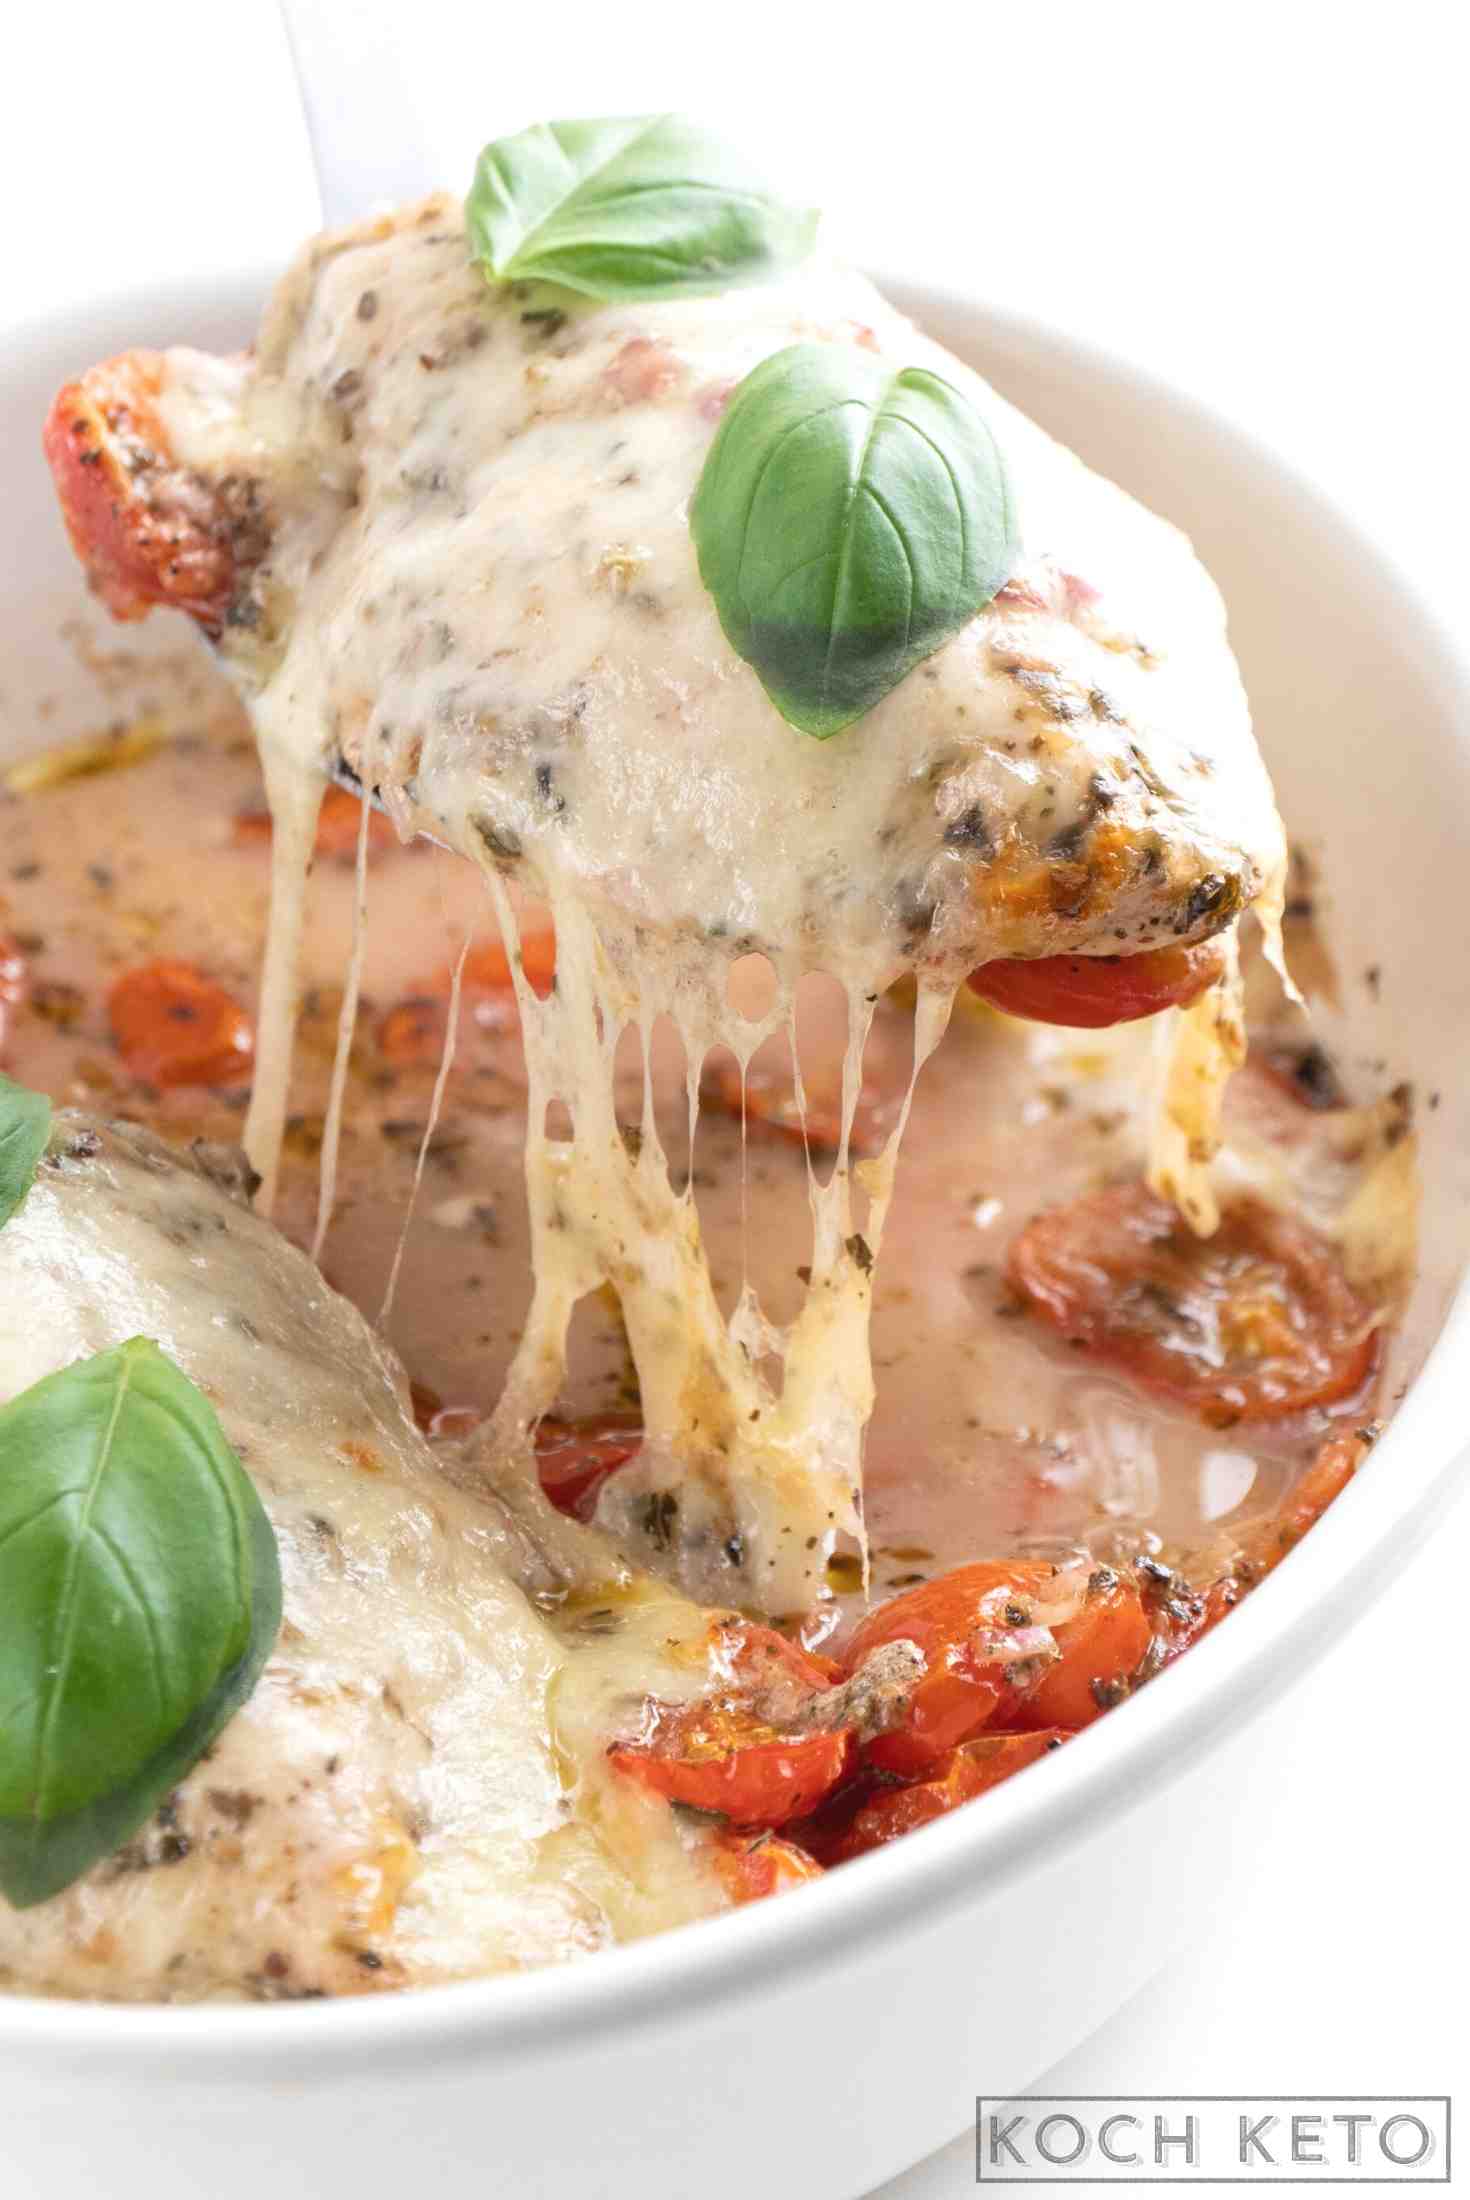 Gebackenes Low Carb Hähnchen Caprese (Tomate-Mozzarella) ohne Kohlenhydrate zum ketogenen Abendessen aus dem Backofen Image #1